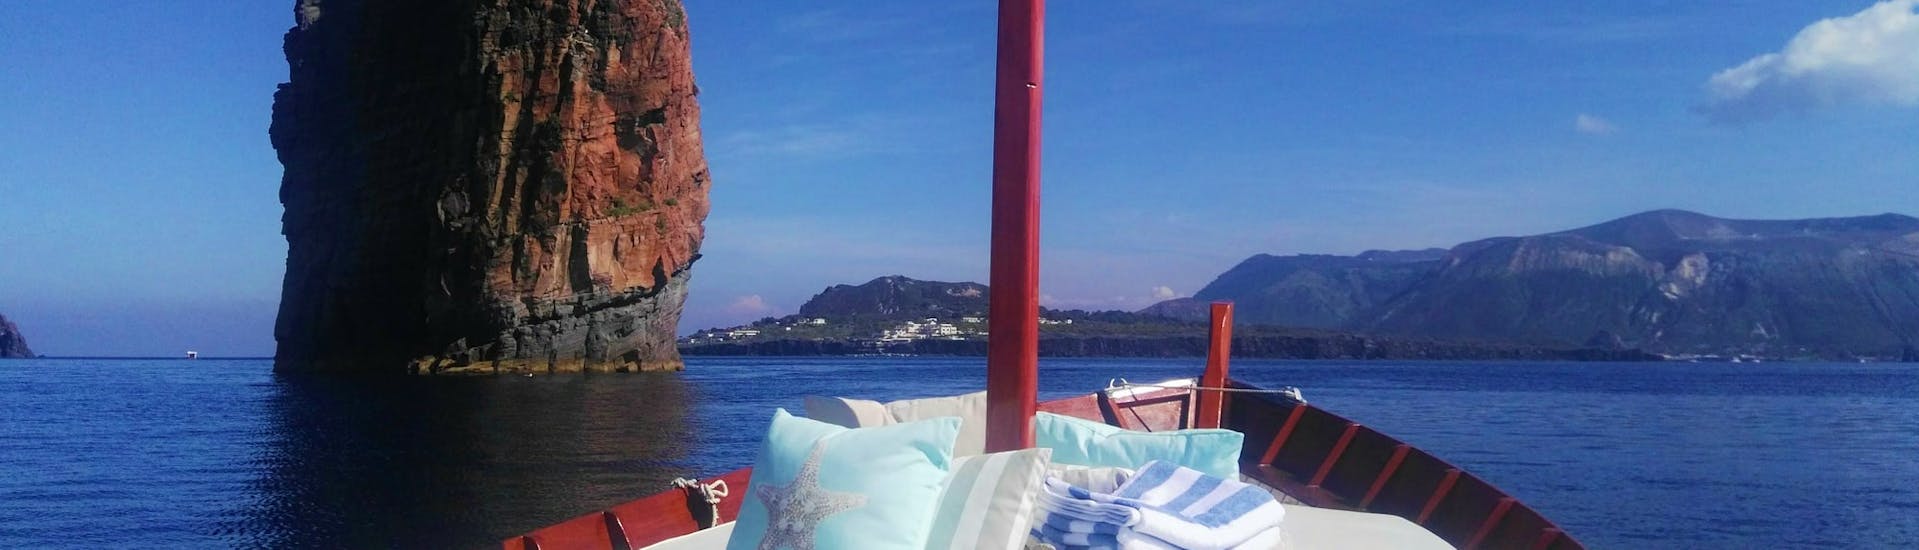 Uitzicht op de Eolische eilanden tijdens een privé boottocht rond Zuid Lipari en Vulcano met Eoliana.